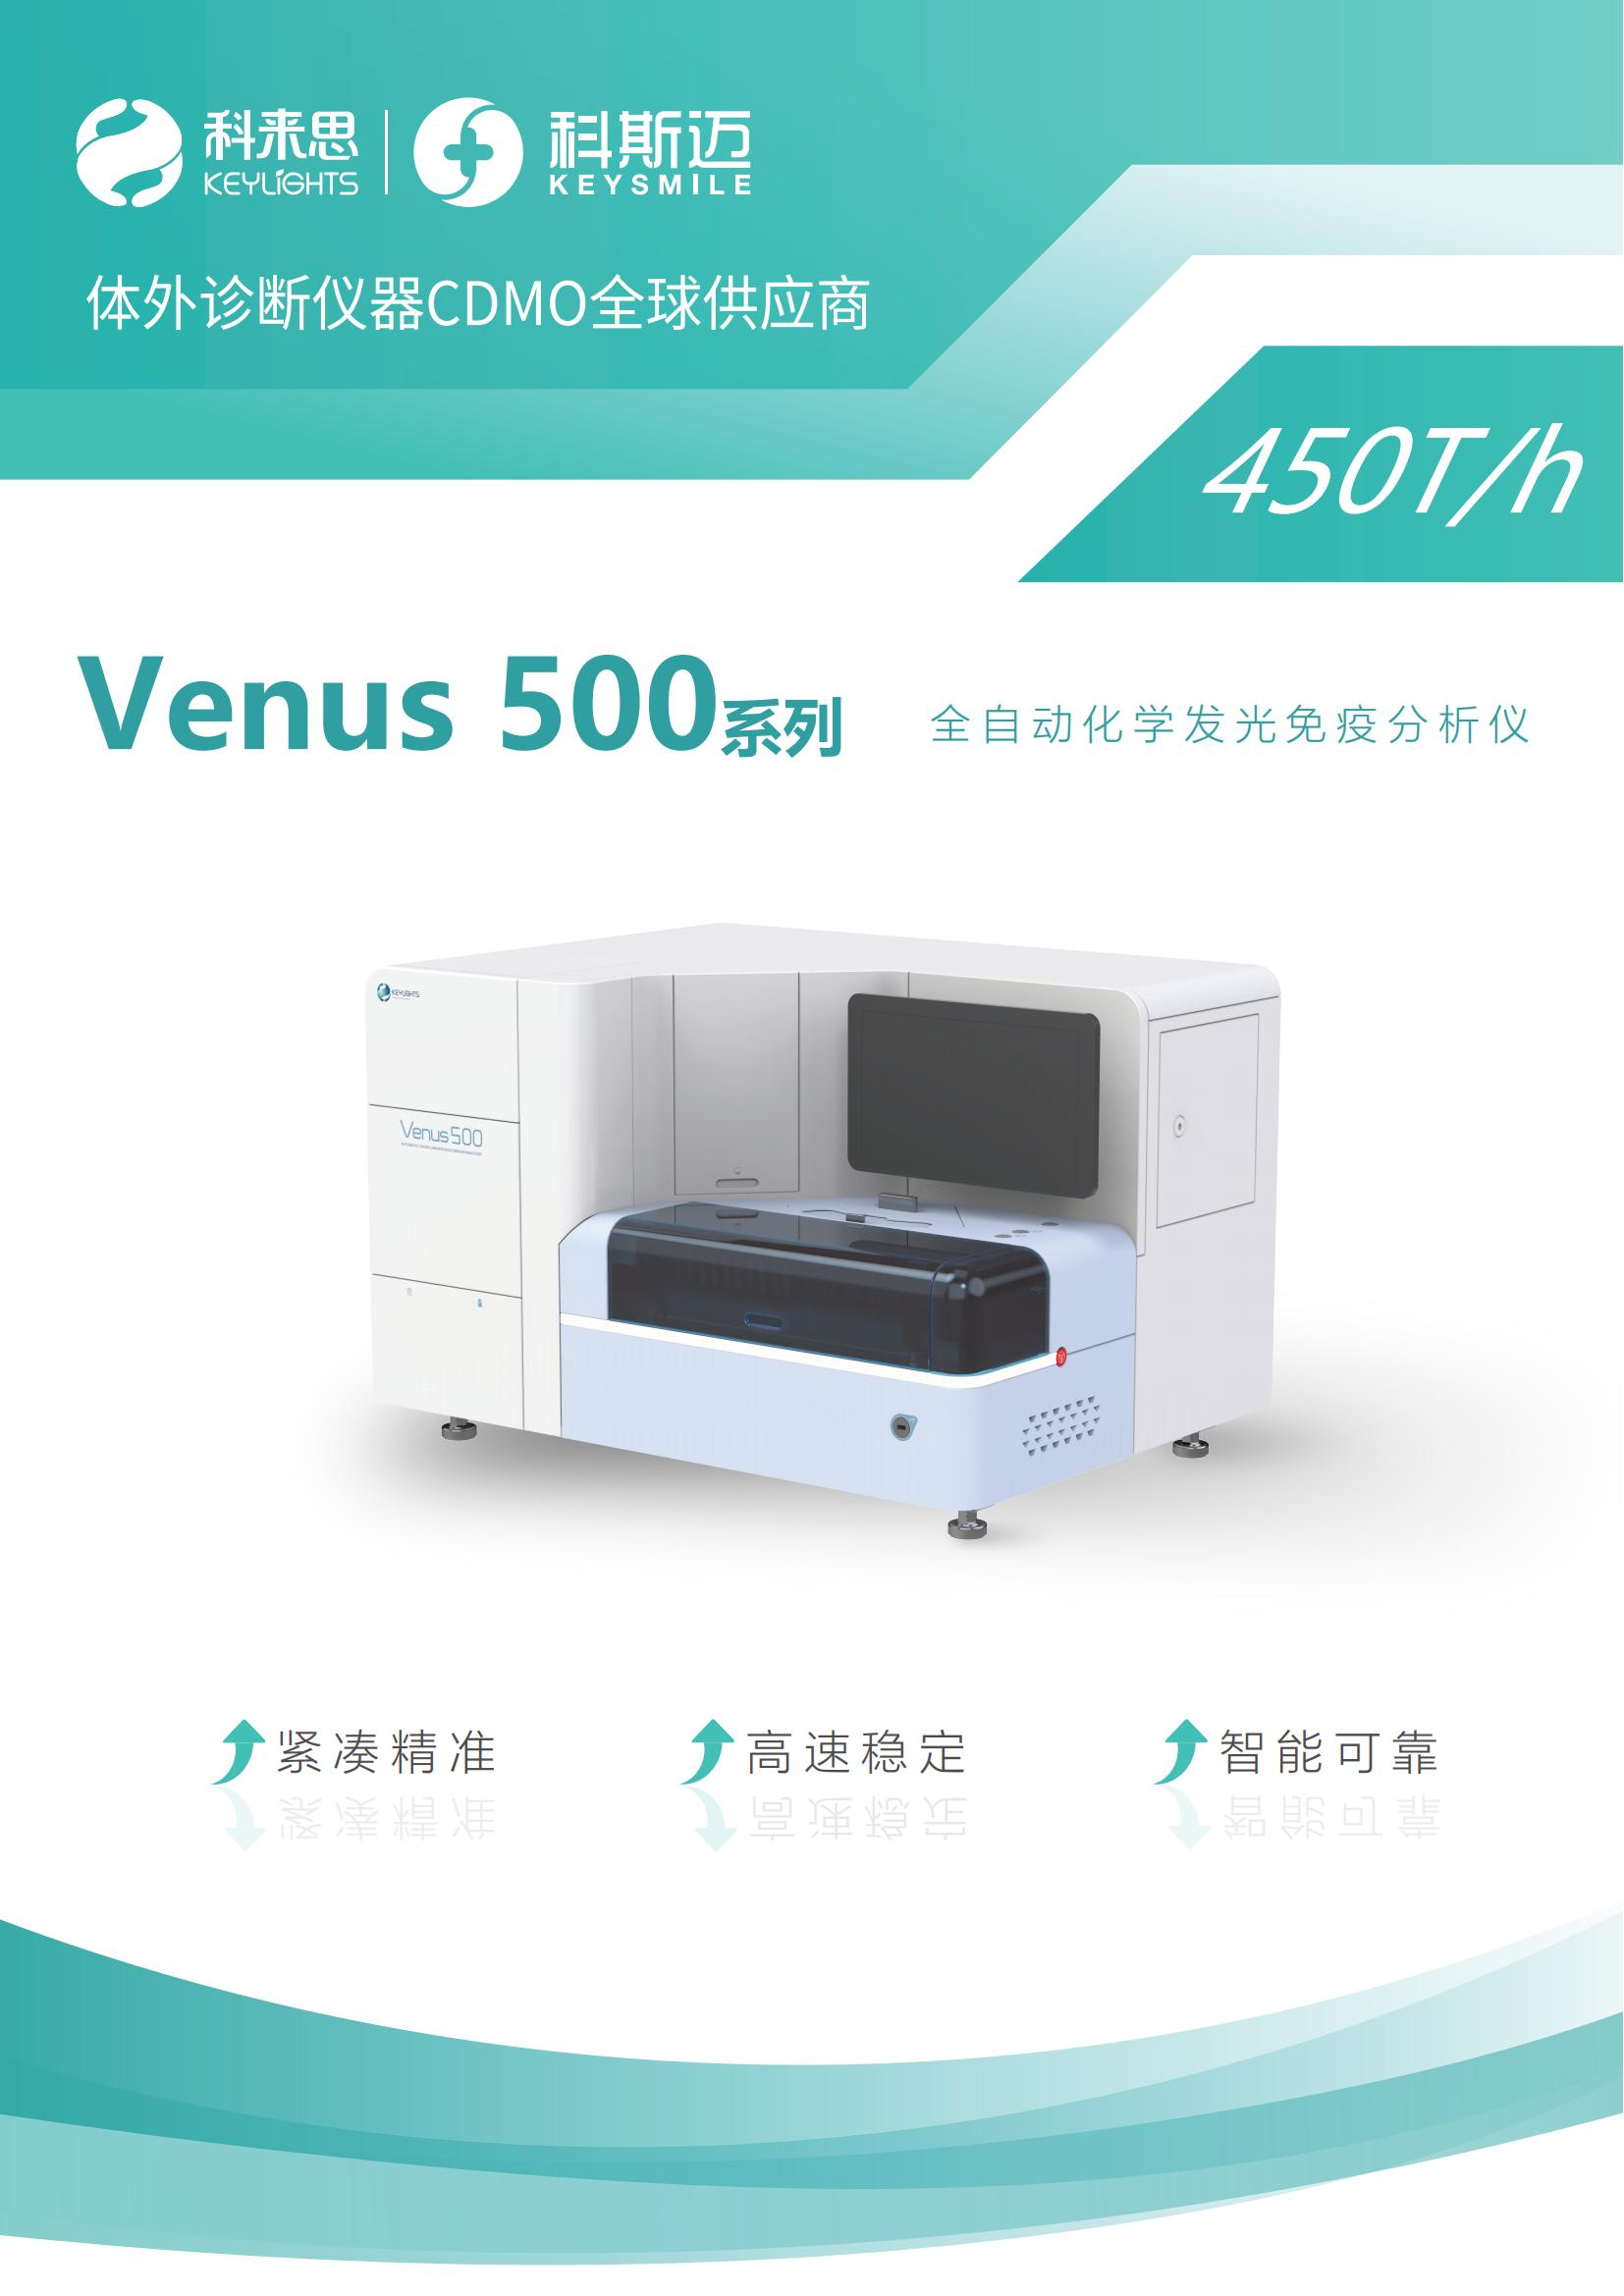 Venus 500